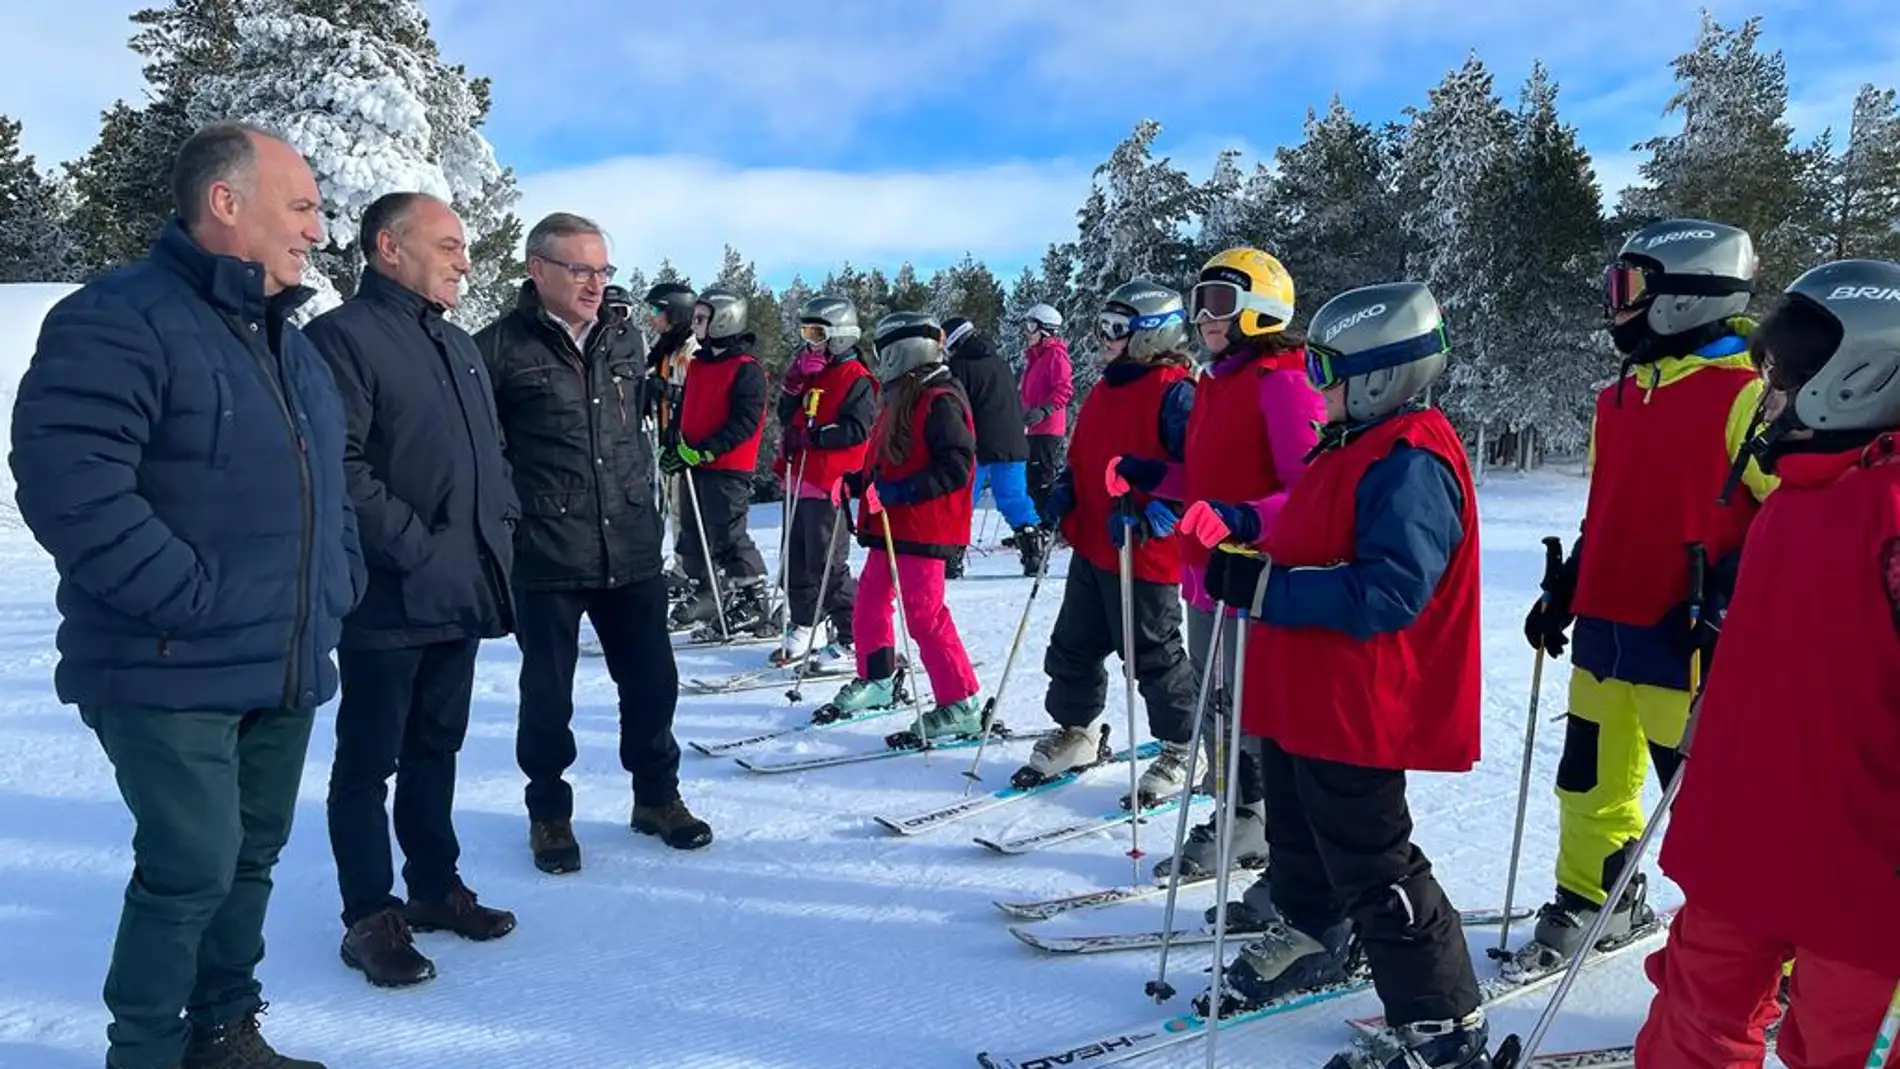 Los representantes de la Diputación han visitado esta mañana a los escolares participantes en la campaña de esquí